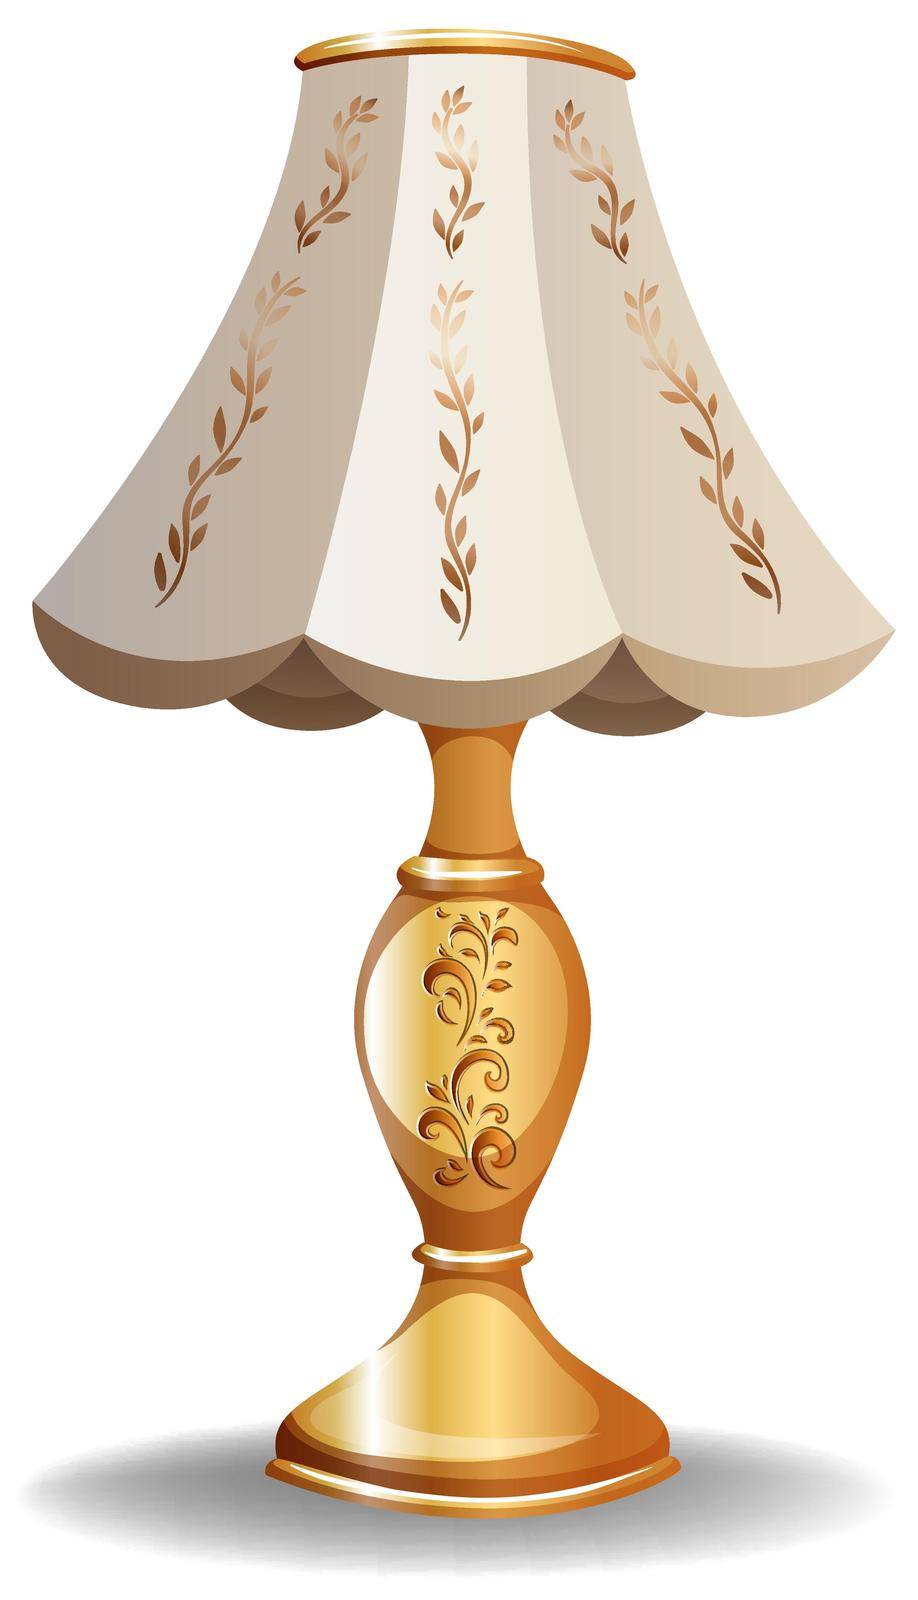 Luxury lamp by iimages